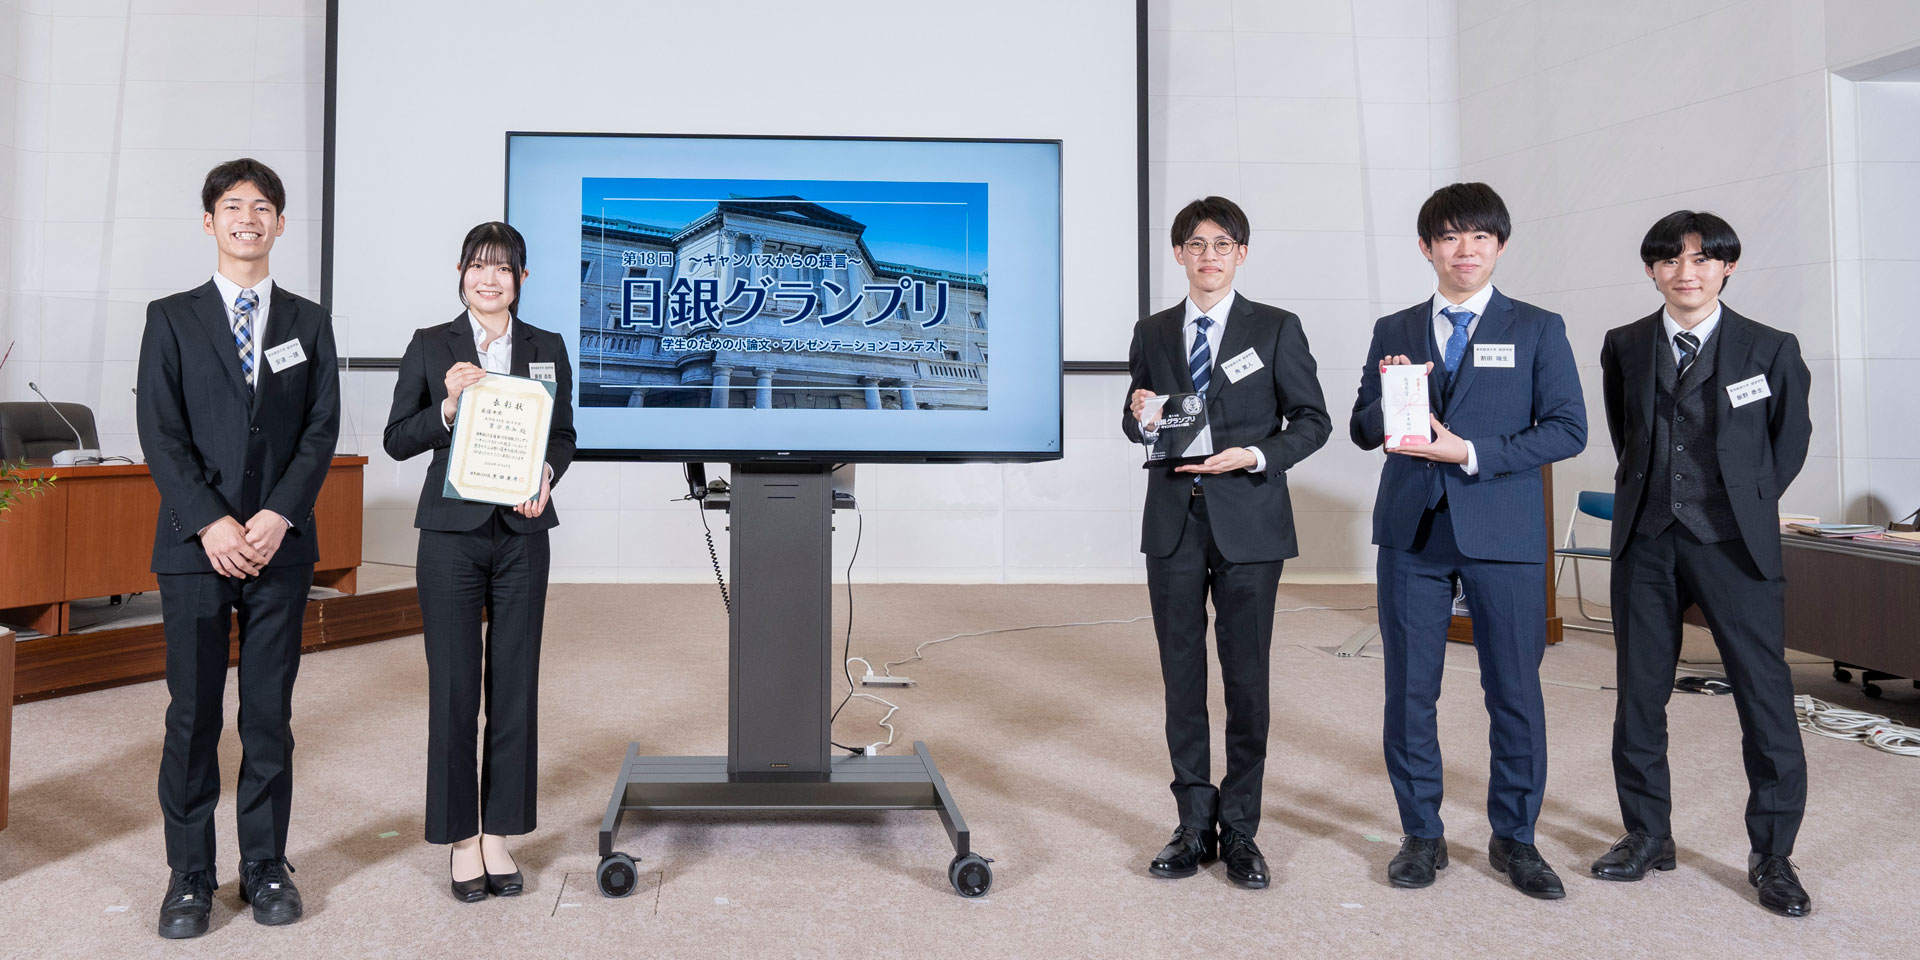 東京経済大学チームの学生5人が、横一列に起立して記念撮影している様子